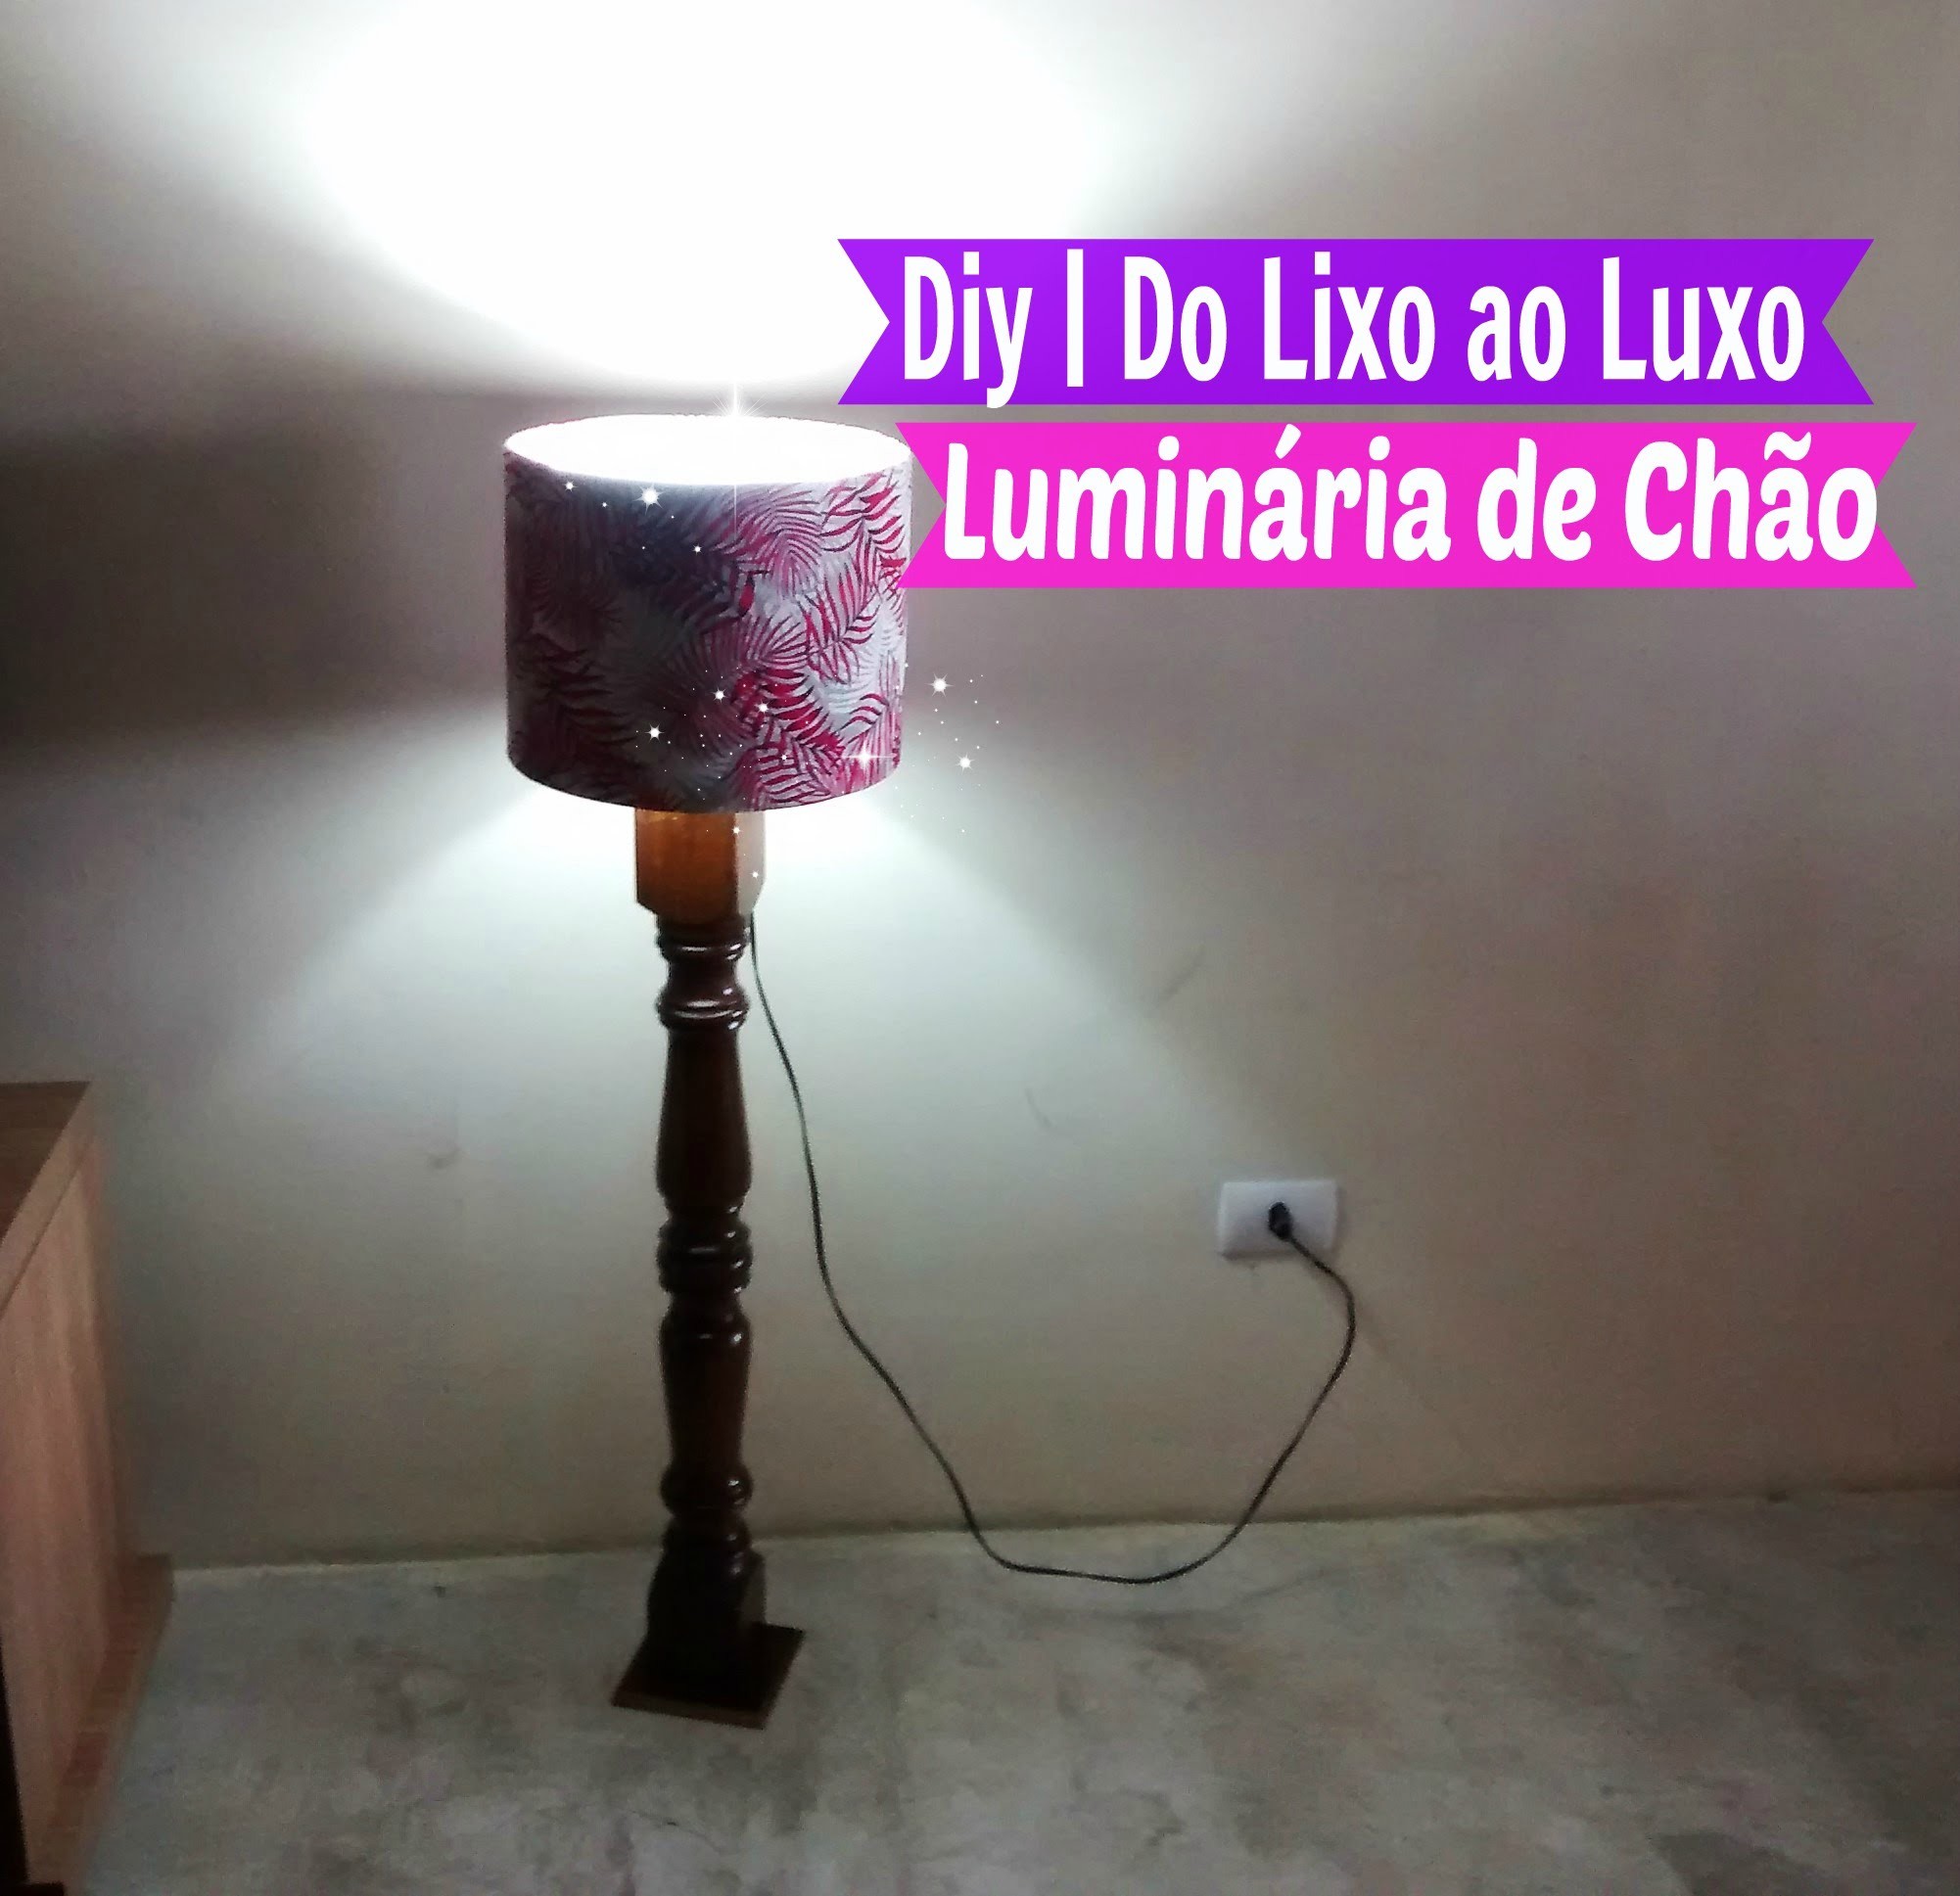 Diy | Do lixo ao Luxo Luminária de Chão | Por Carla Oliveira